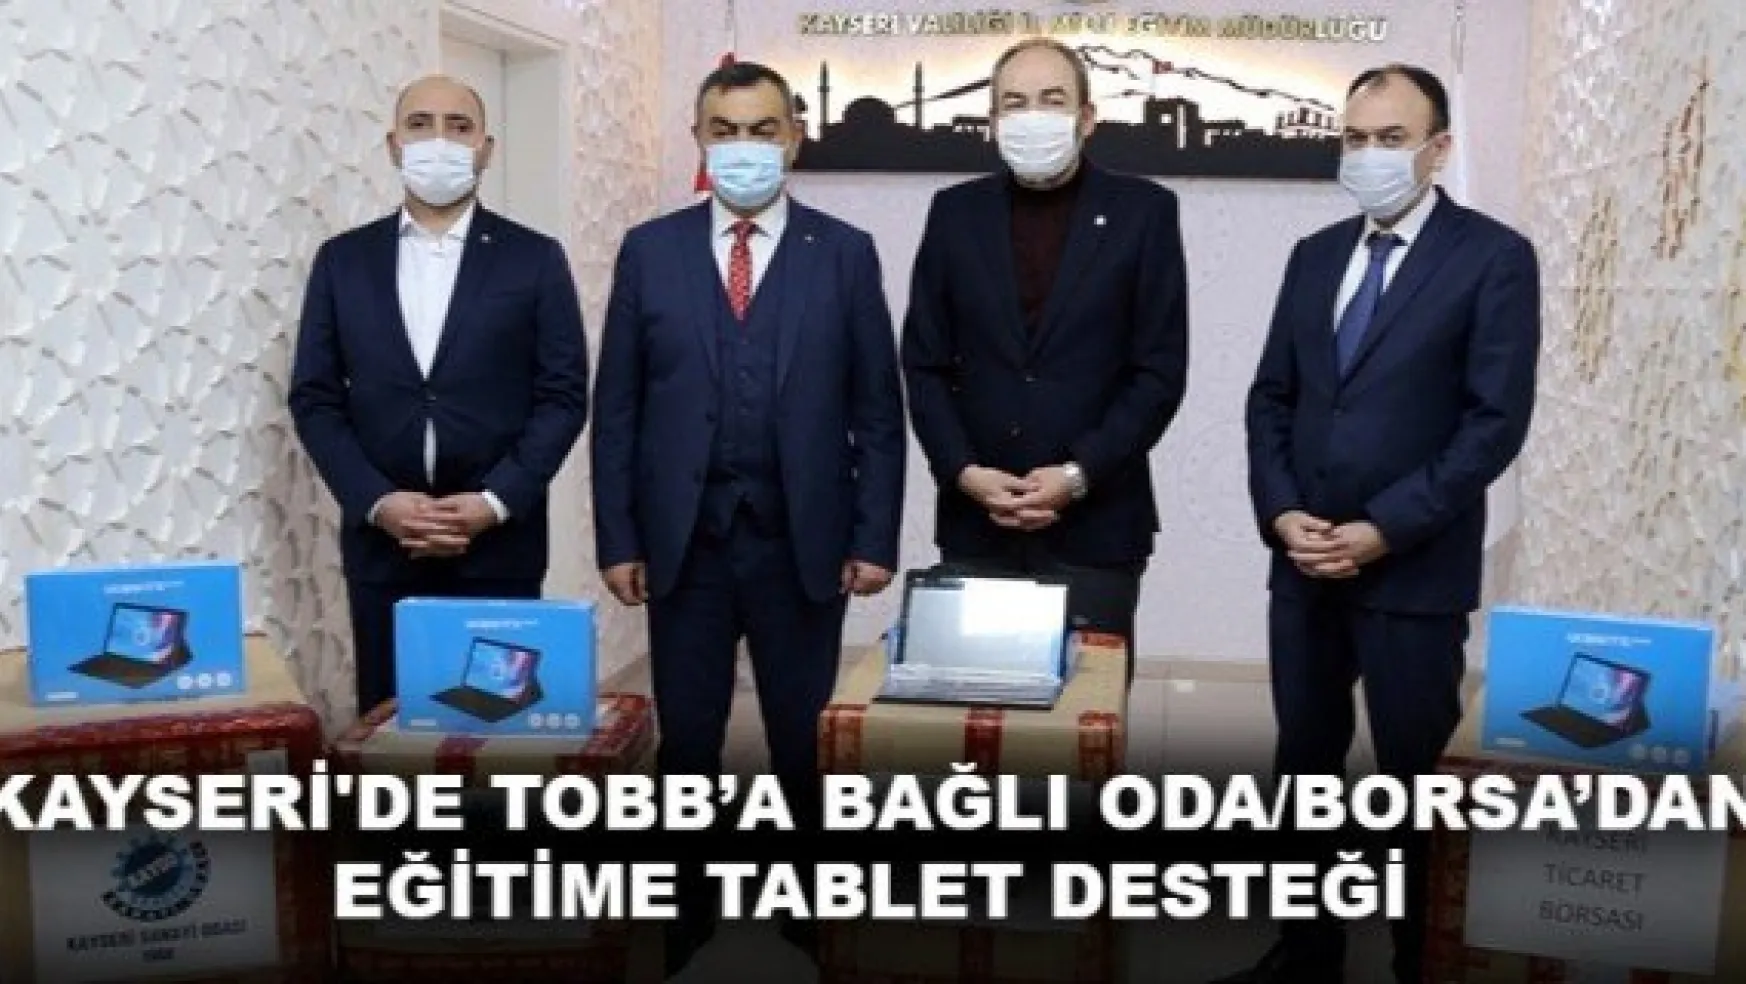 KAYSERİ'DE TOBB'A BAĞLI ODA/BORSA'DAN EĞİTİME TABLET DESTEĞİ